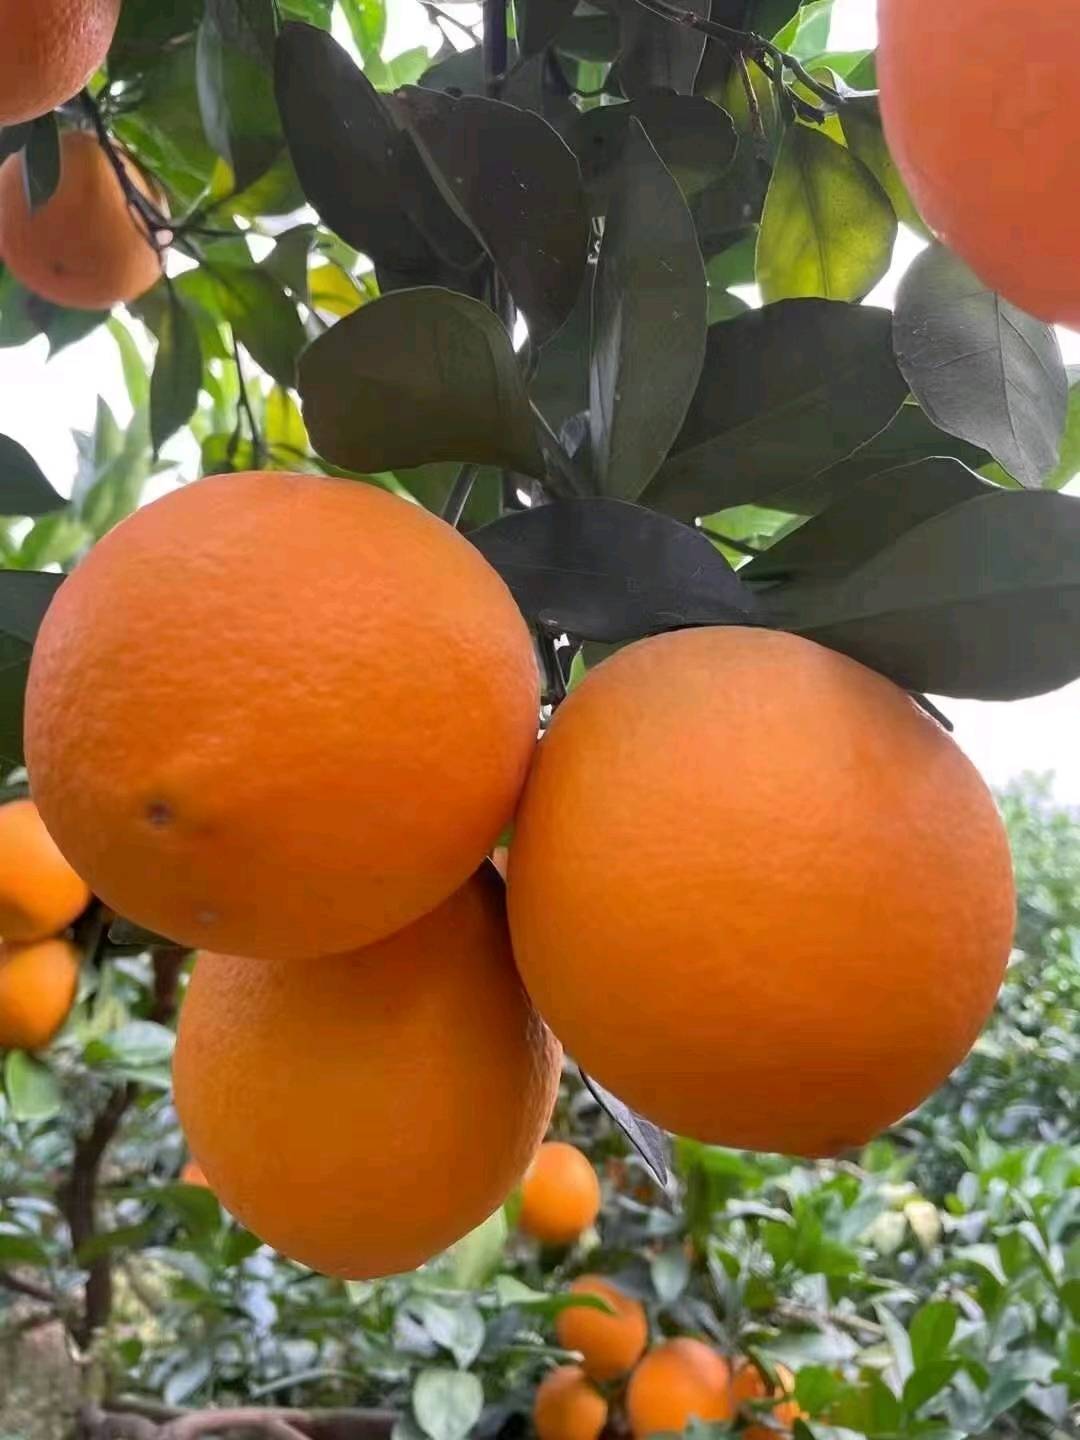   秭归脐橙（15997500576）微信同号 
 伦晚鲜橙 中华红红橙 夏橙 纽荷尔 长虹 园红 九月红等品种都有，量大从优。本人长期做宜昌橙子、蜜桔等相关